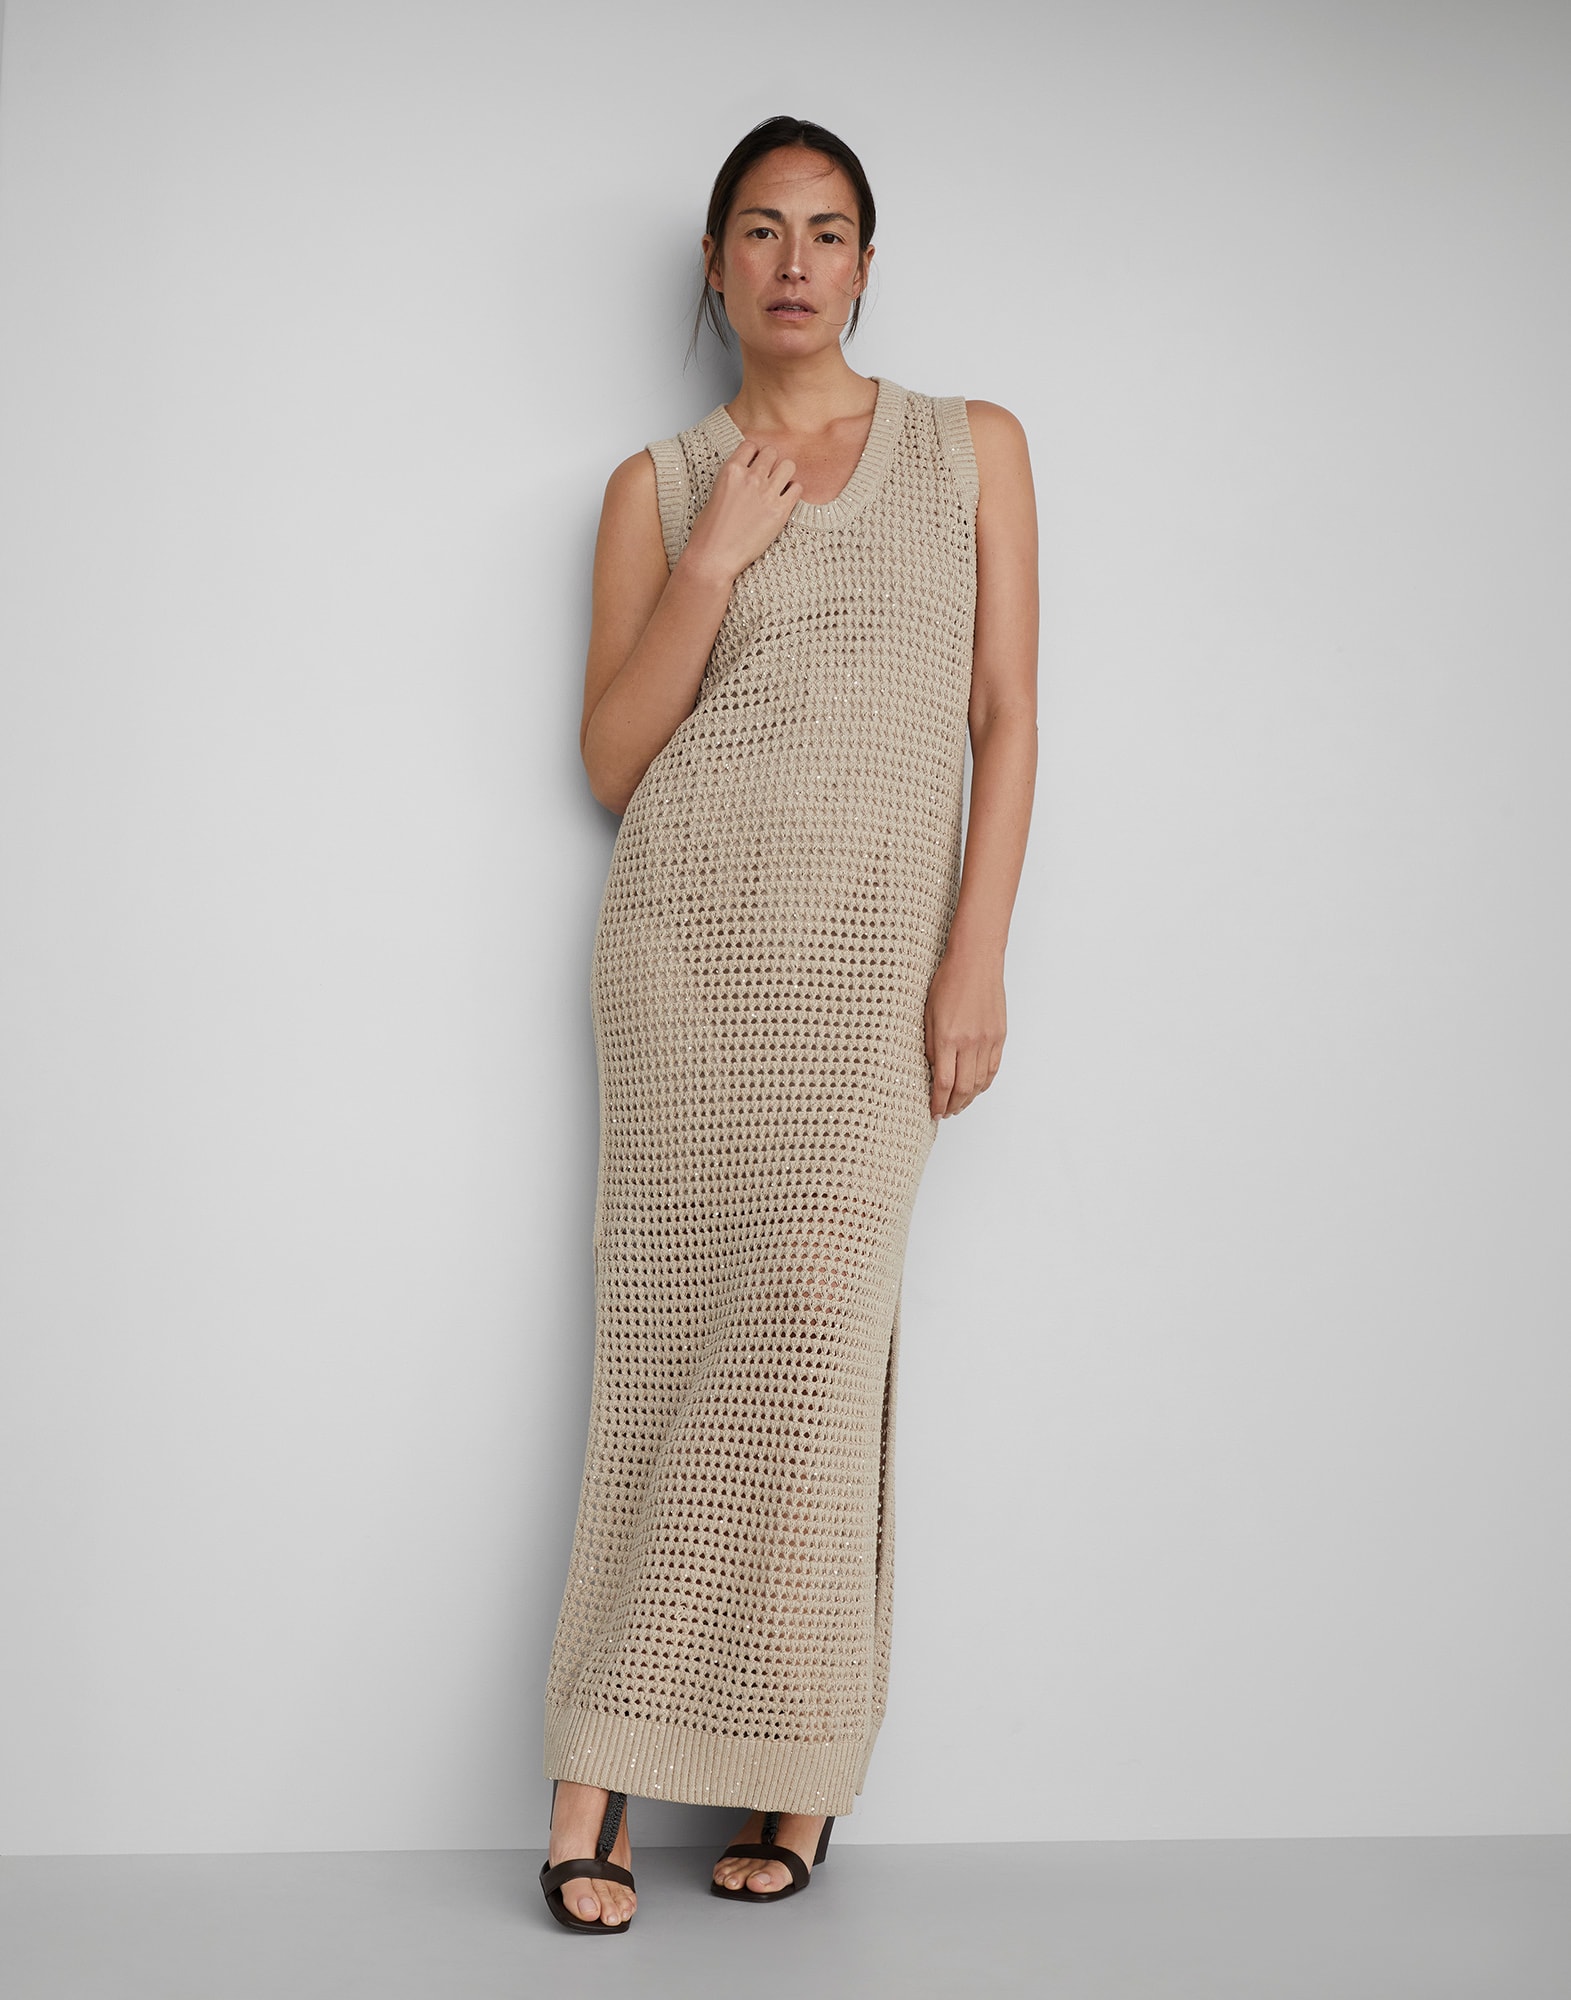 Dazzling Net knit dress